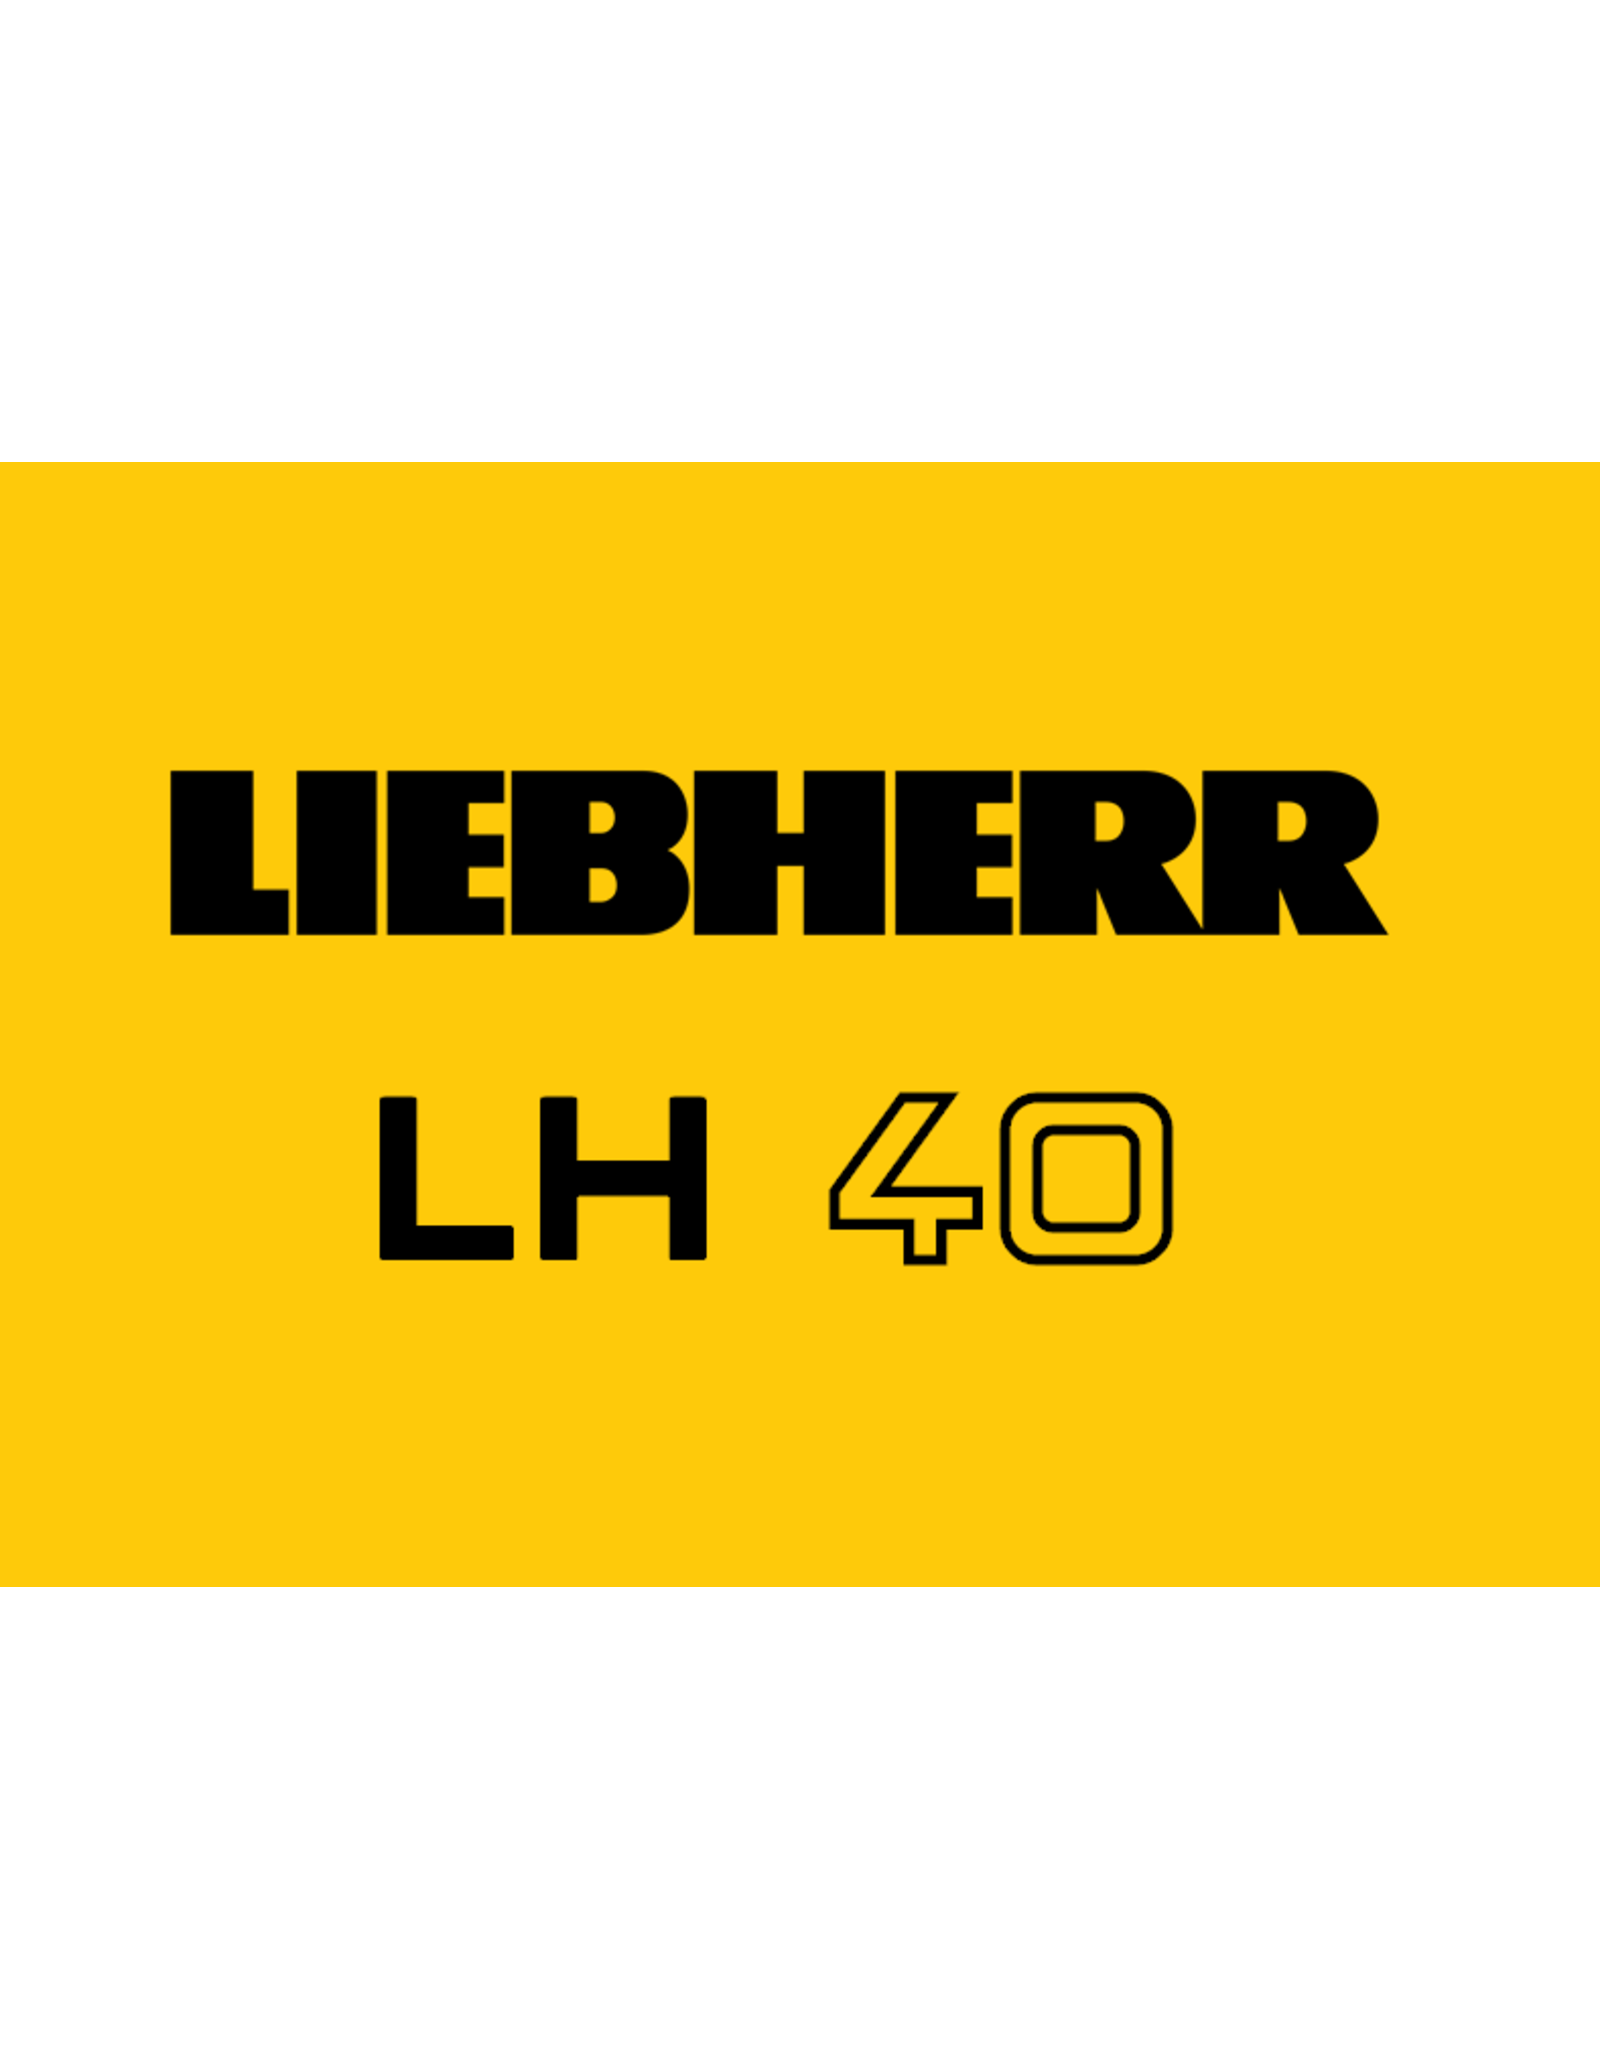 Echle Hartstahl GmbH FOPS for Liebherr LH 40